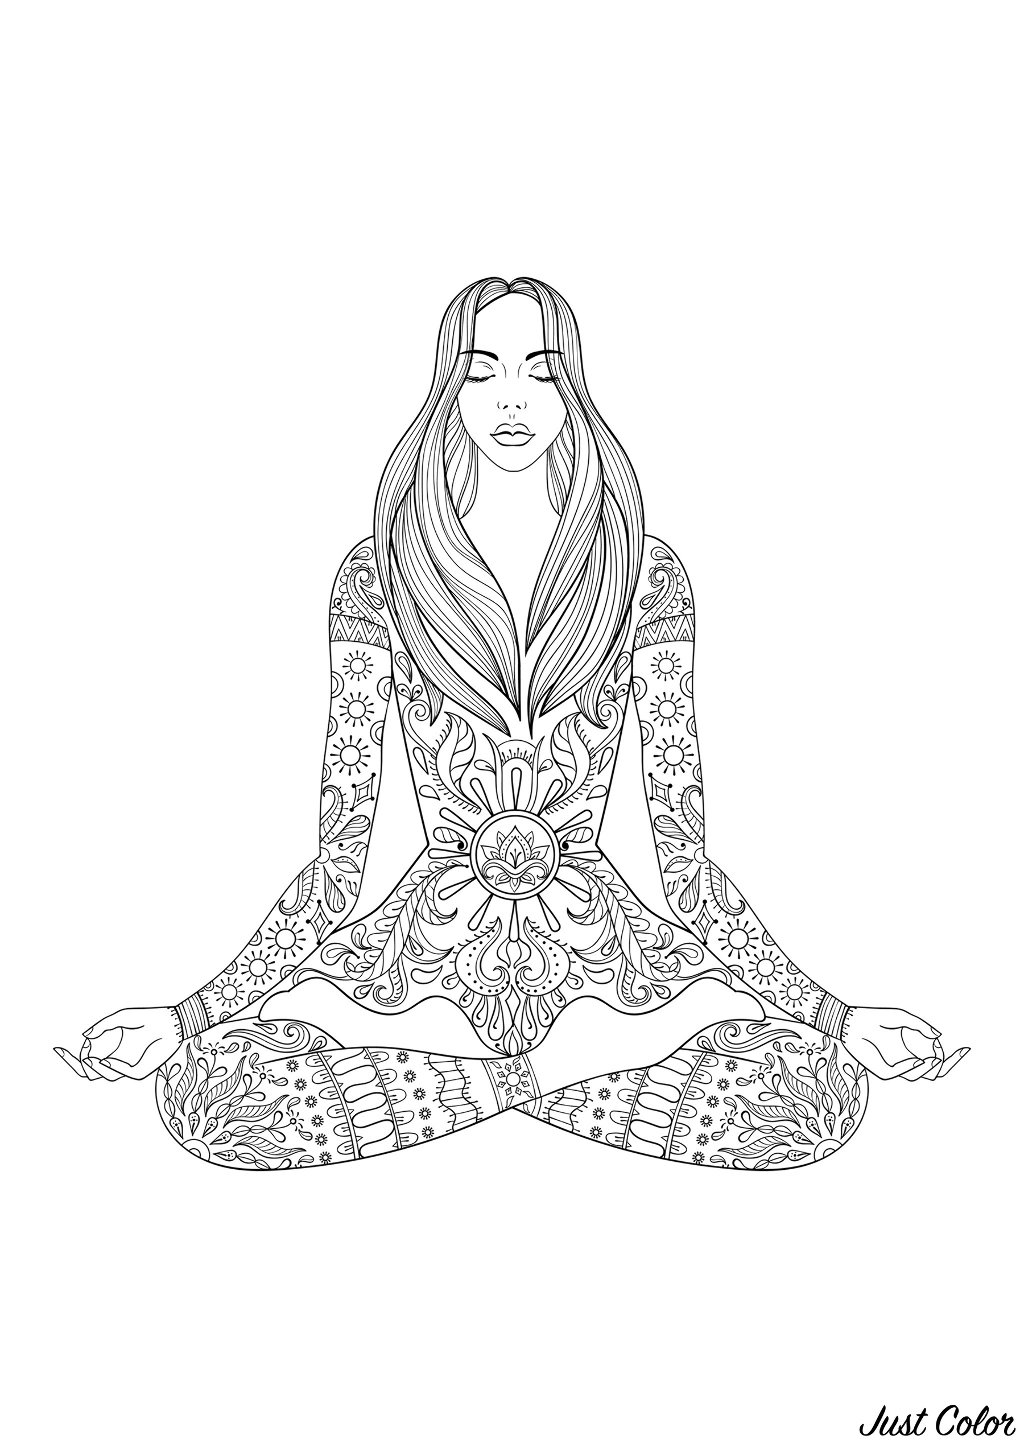 Meditation : Woman sitting in lotus pose